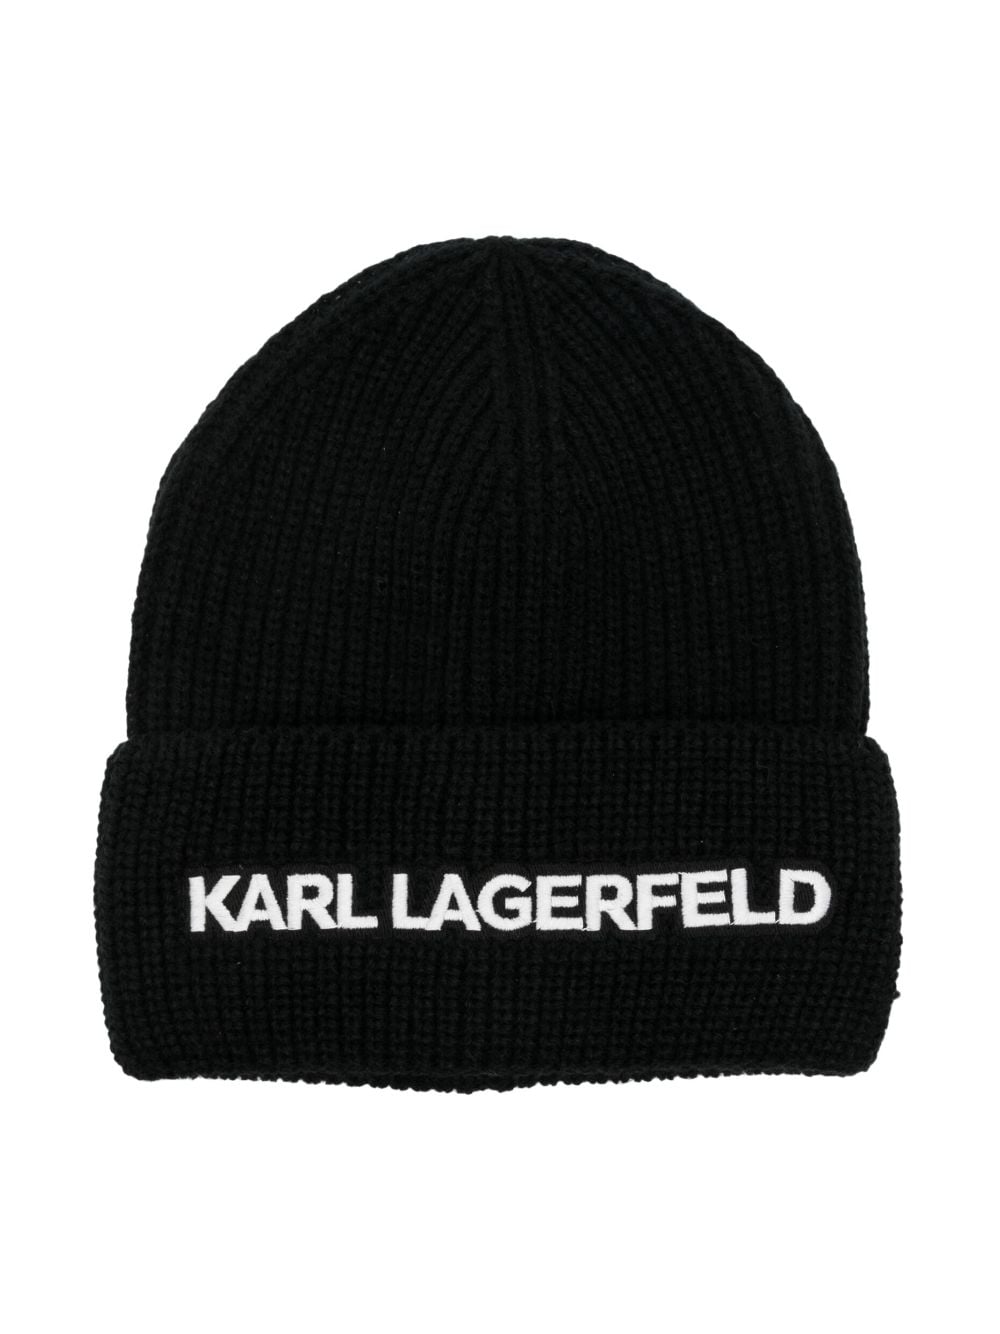 Karl Lagerfeld Kids embroidered logo beanie - Black von Karl Lagerfeld Kids